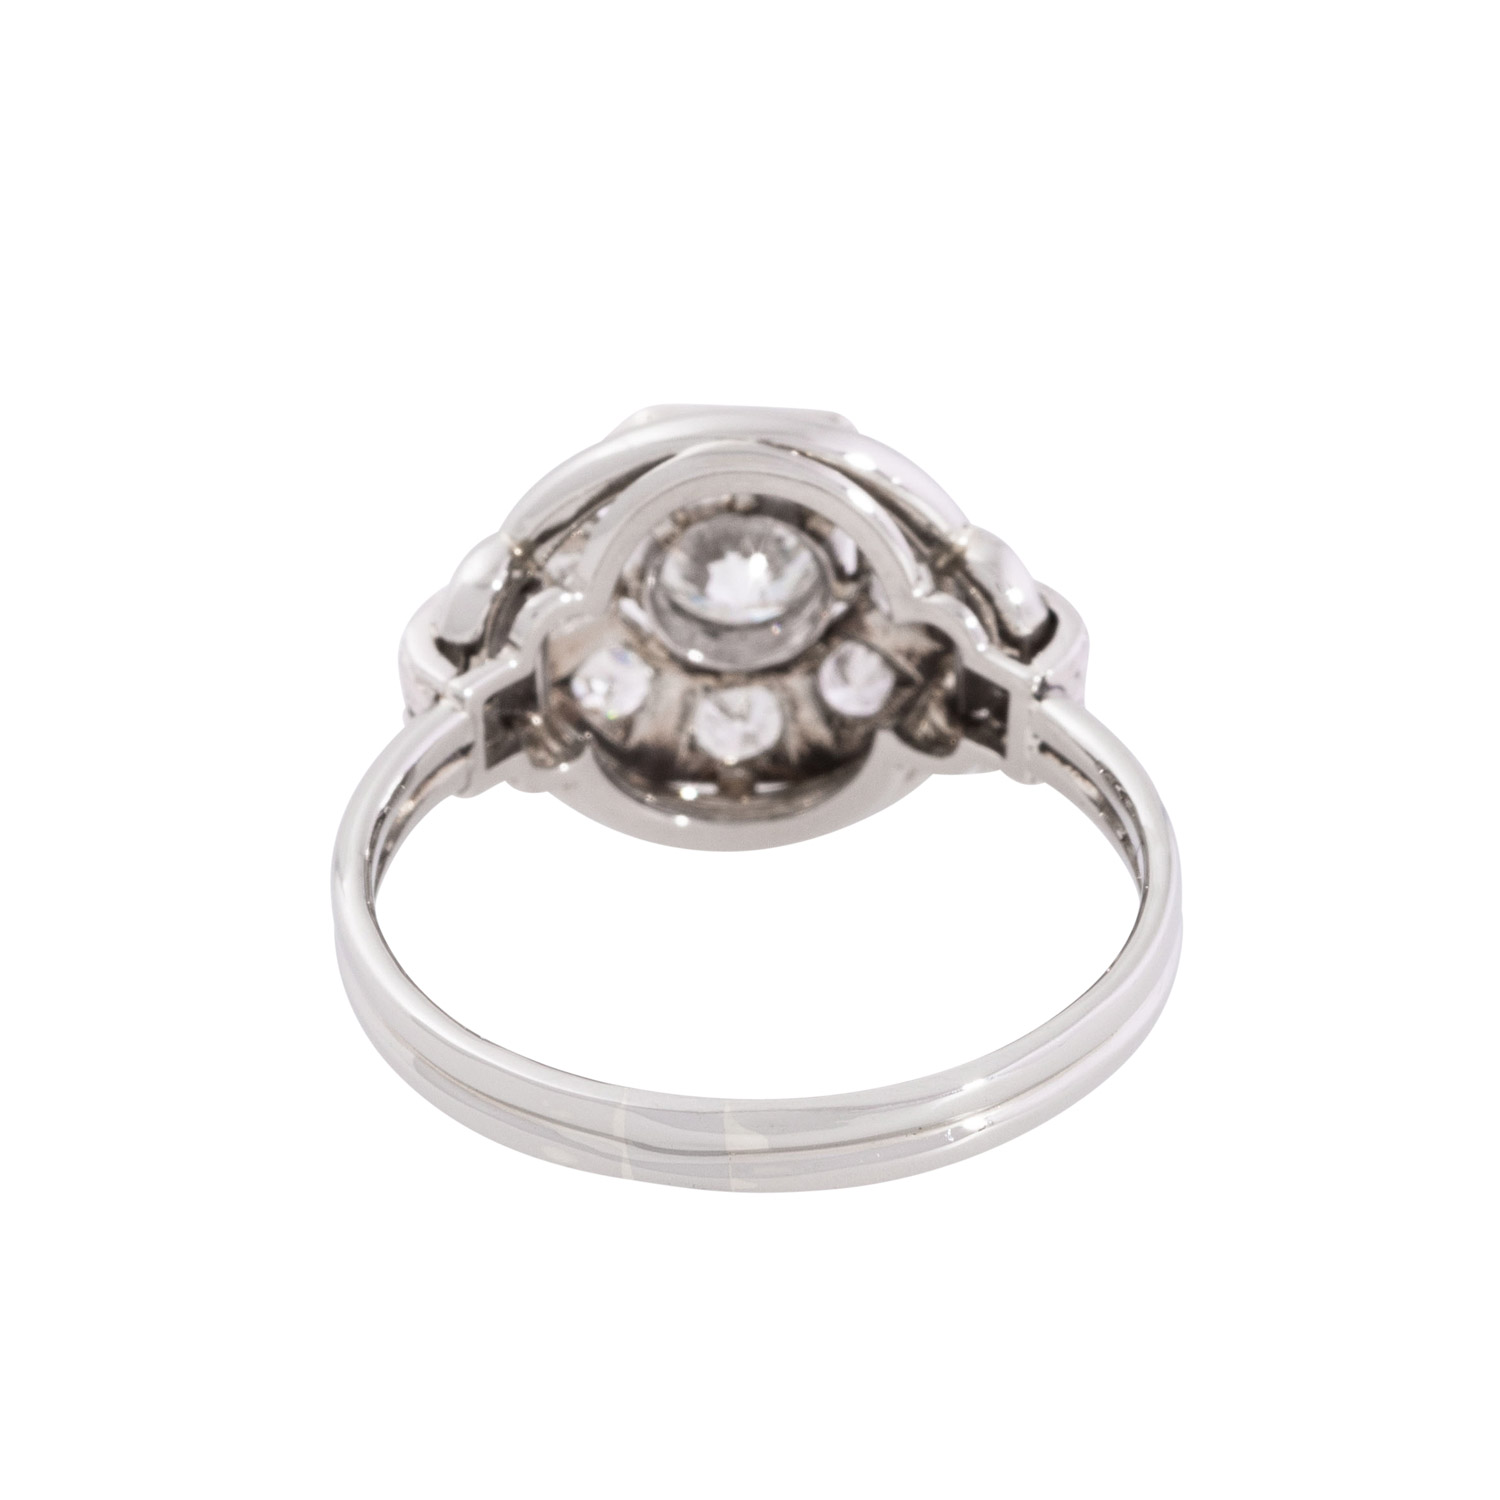 Ring mit Brillanten und Achtkantdiamanten zus. ca. 0,9 ct, - Image 3 of 3